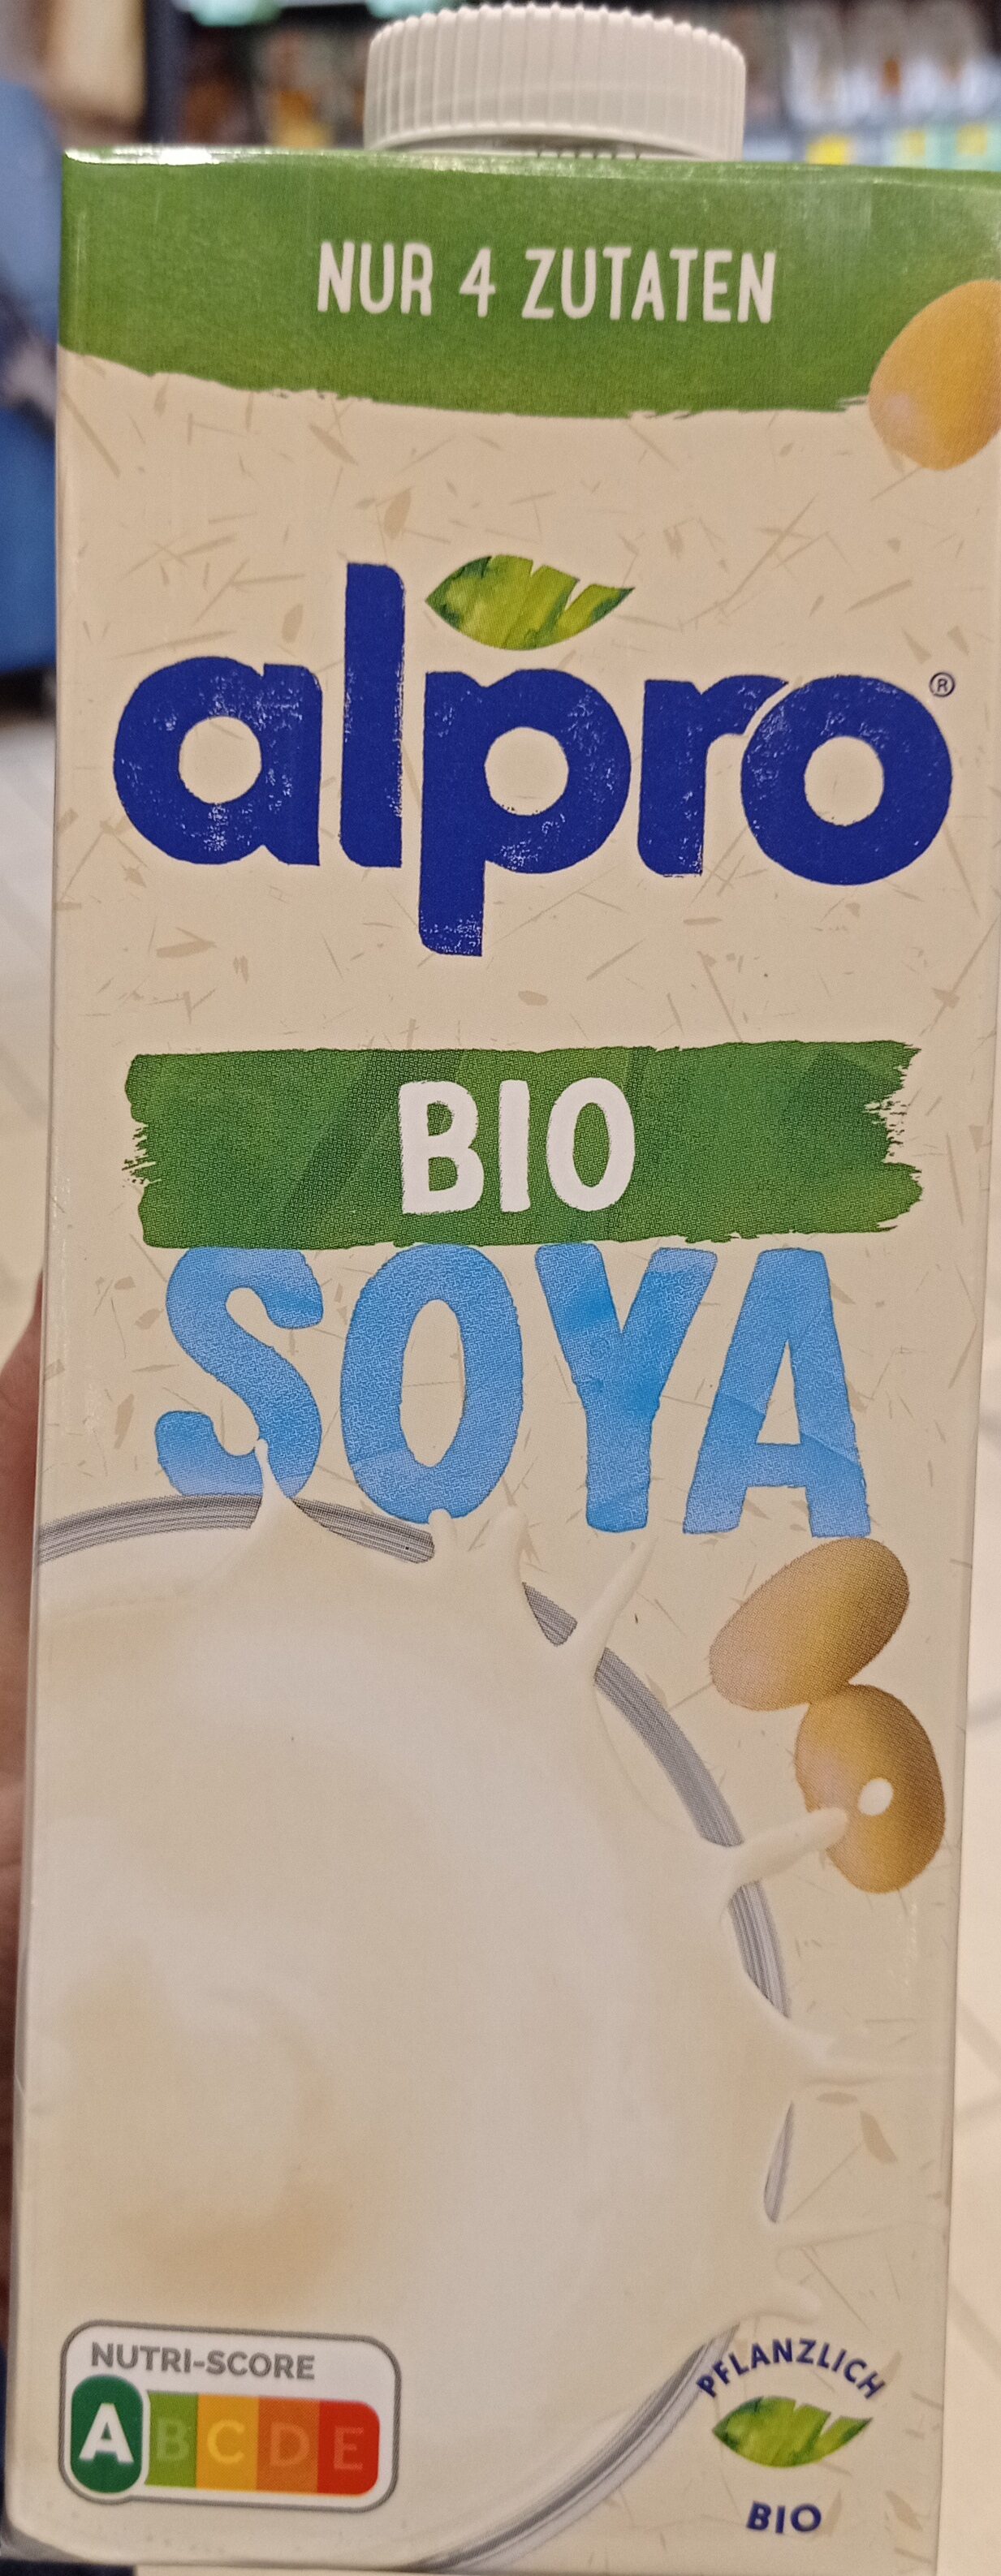 Bio Soya - Product - de